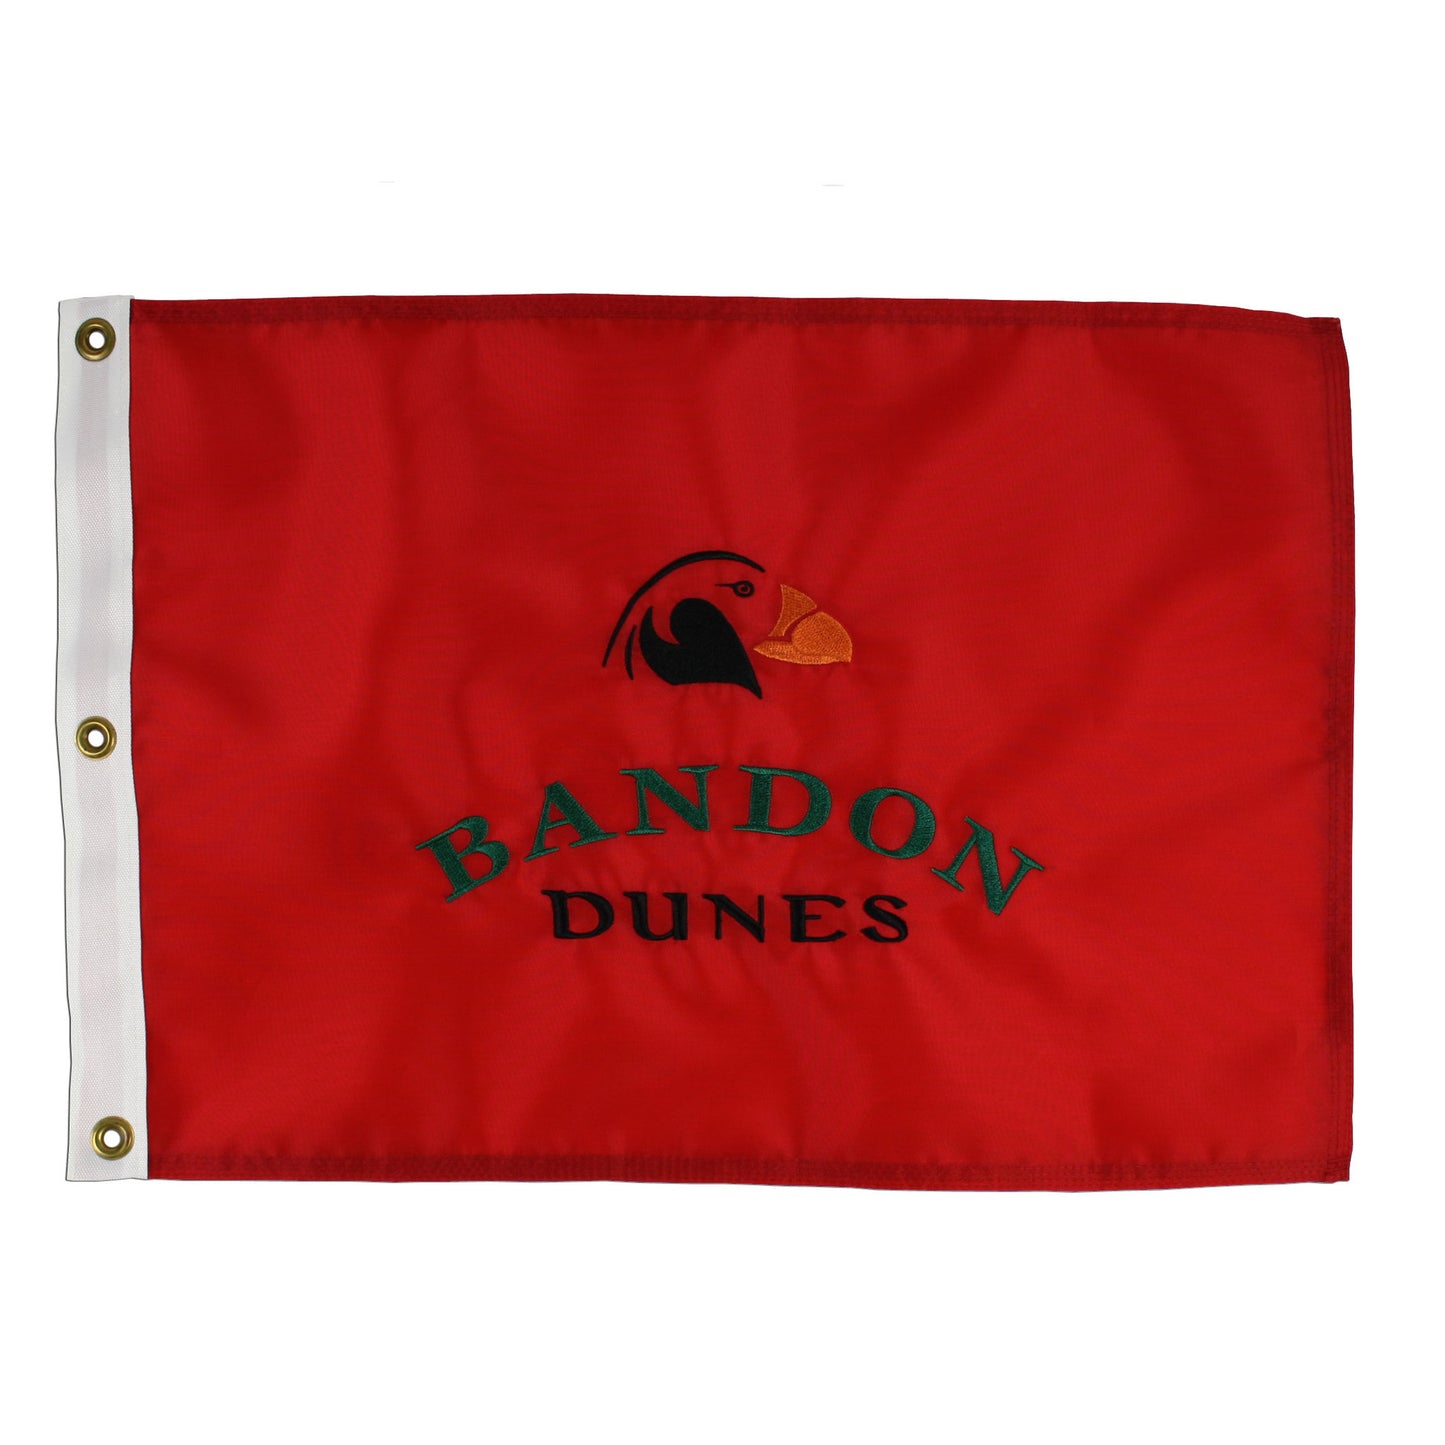 Bandon Dunes Course Flag